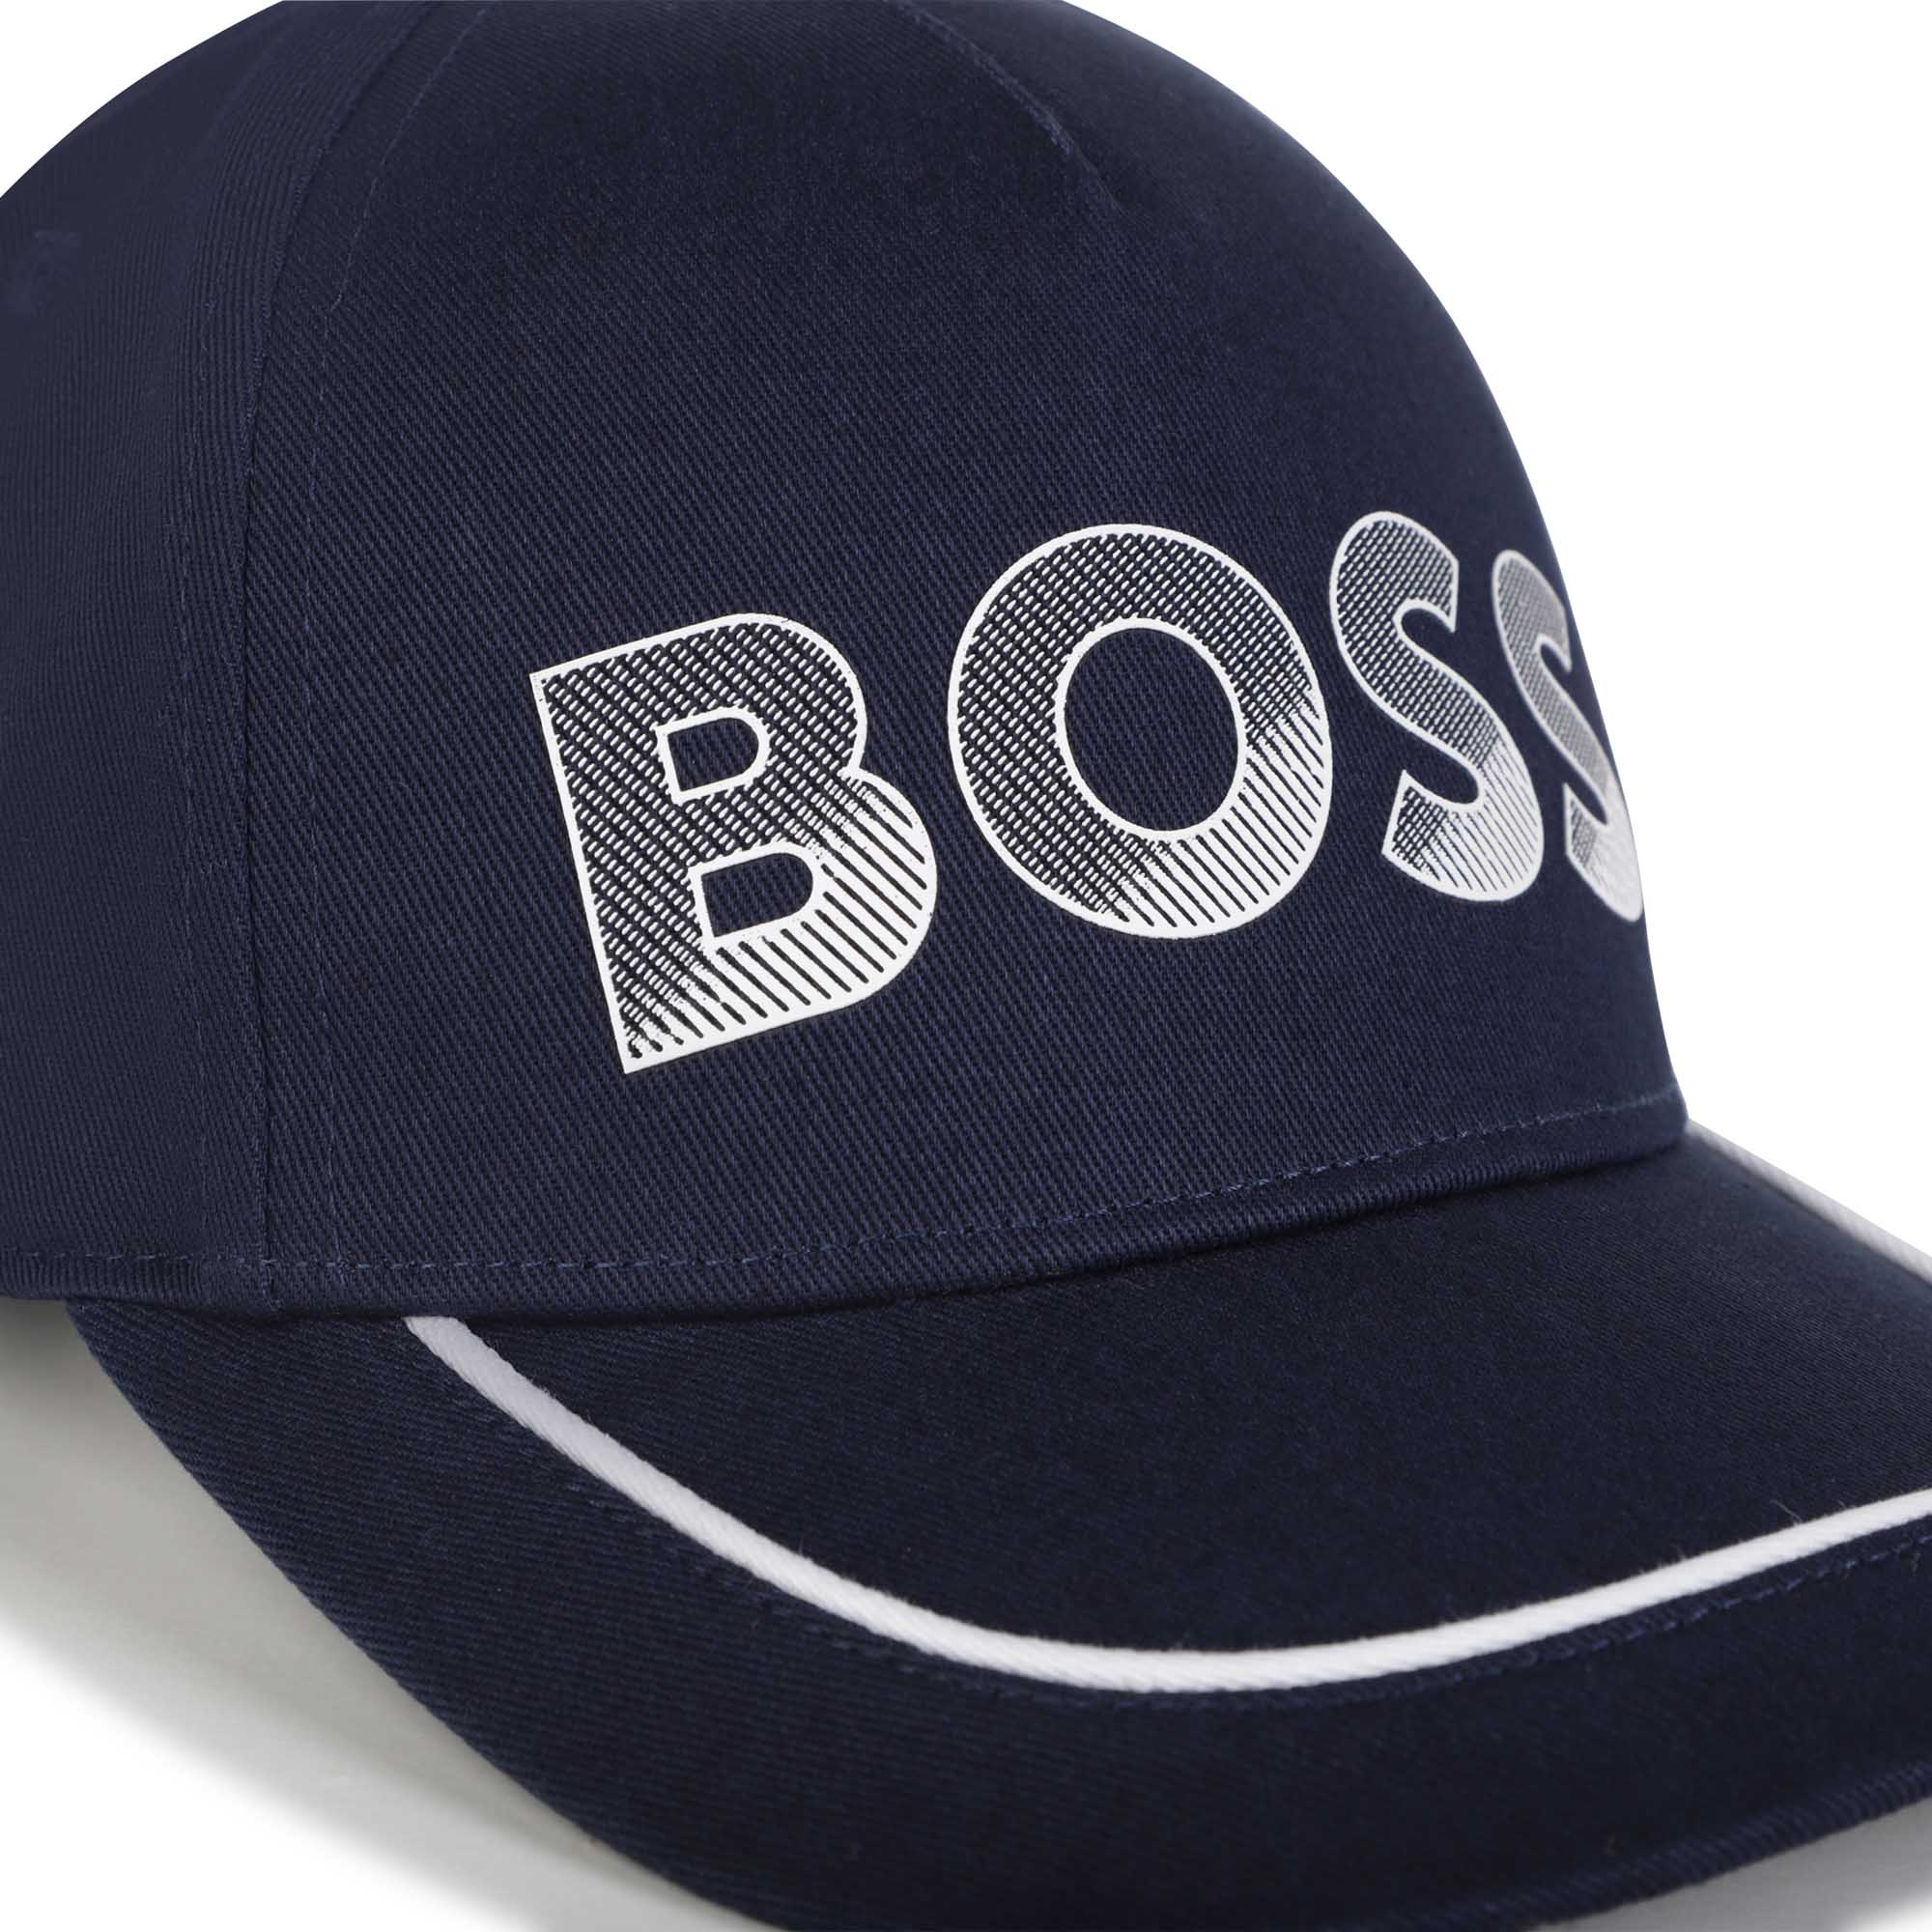 Cotton cap BOSS for BOY